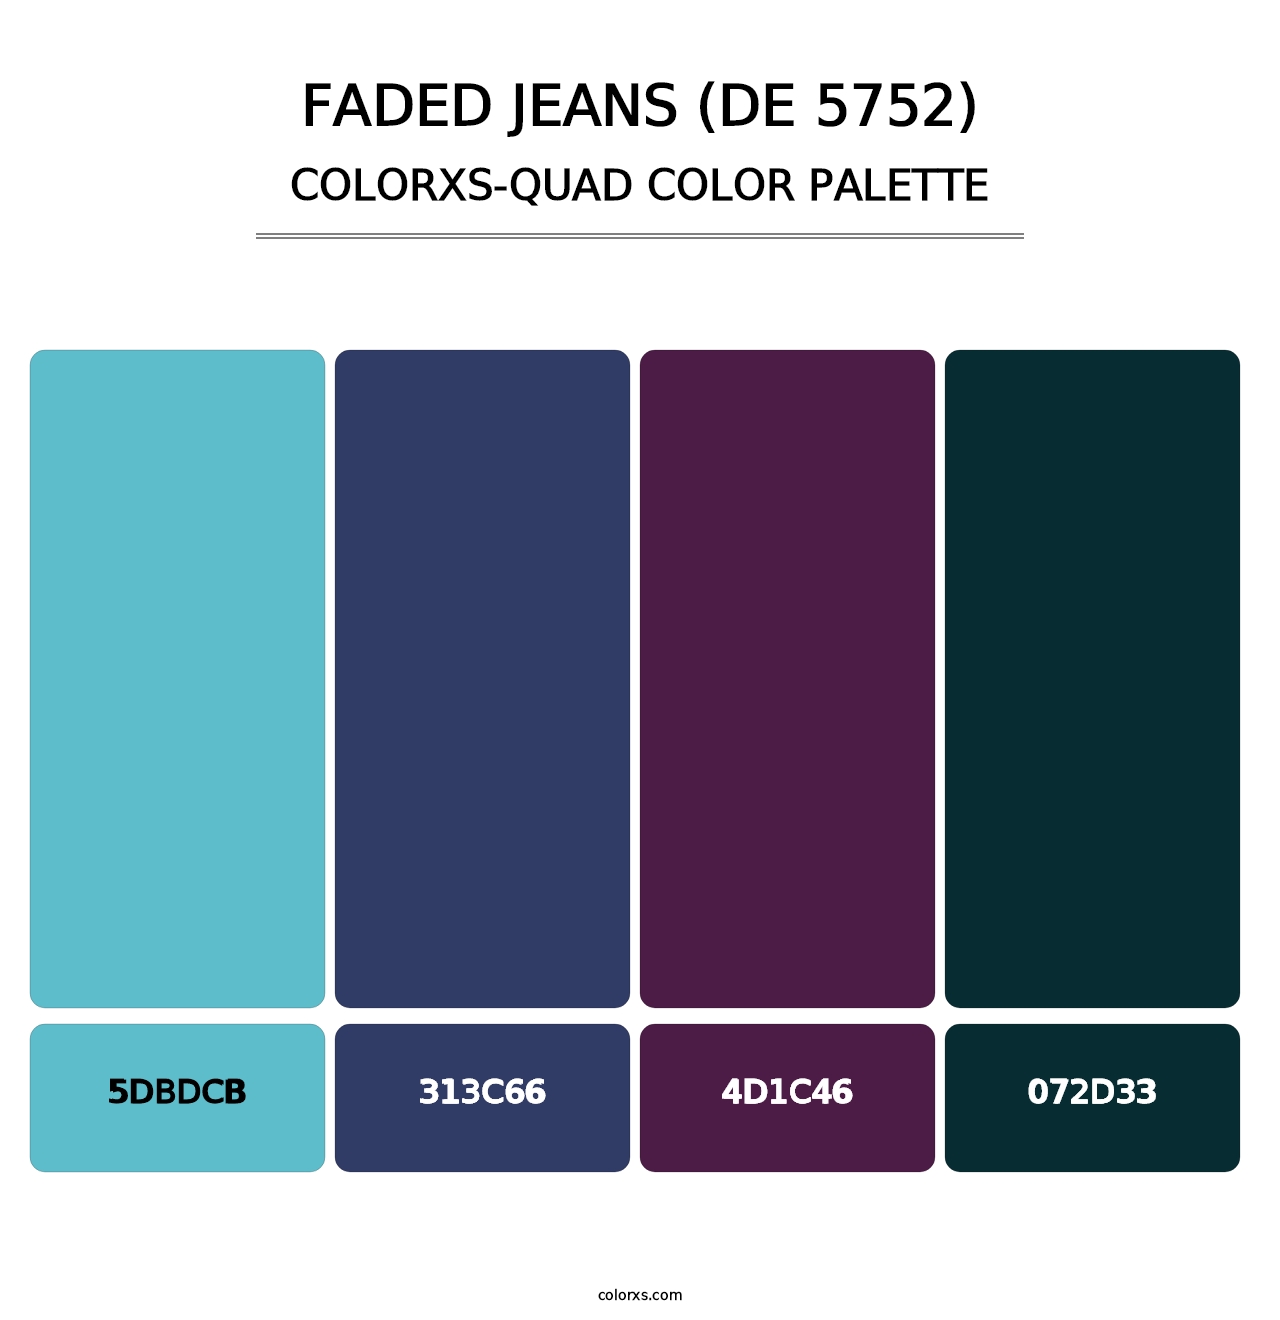 Faded Jeans (DE 5752) - Colorxs Quad Palette